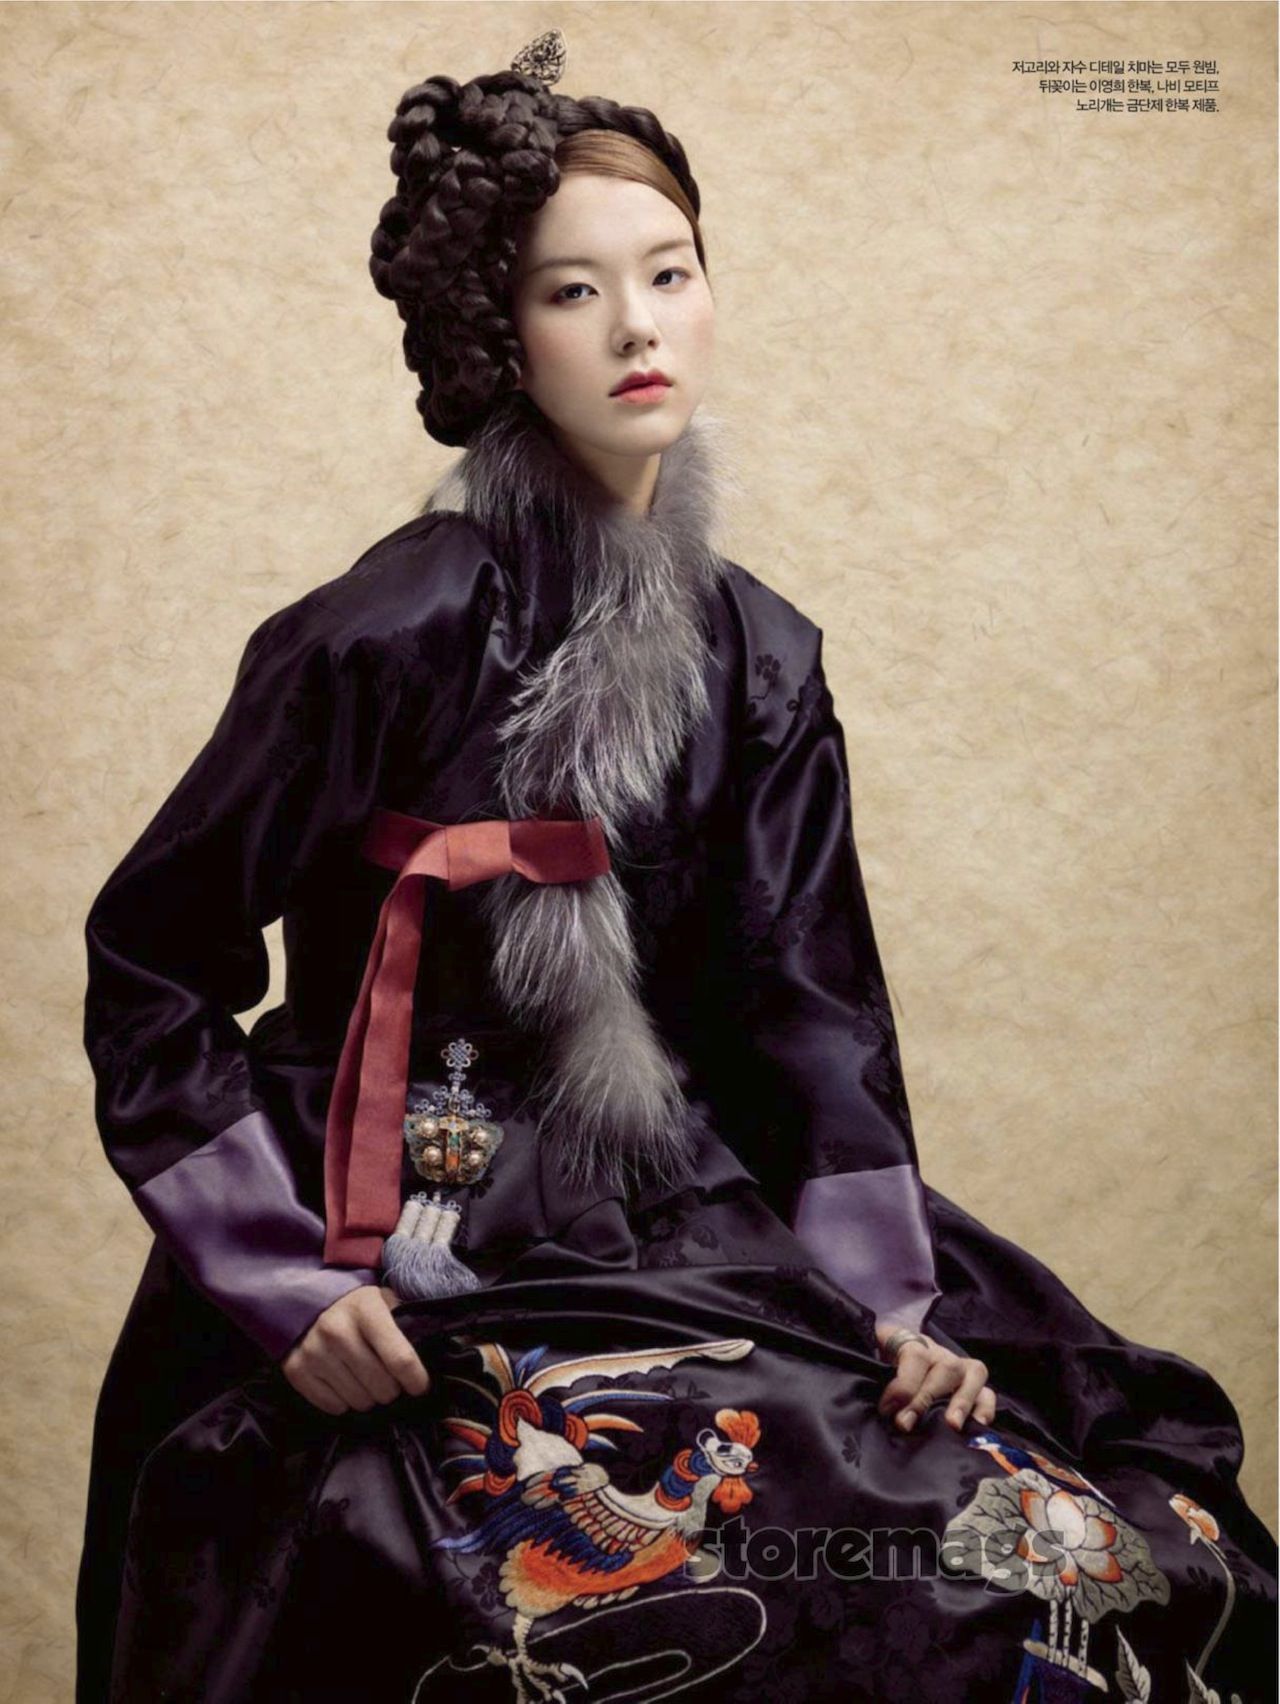 Lee Eun Bin